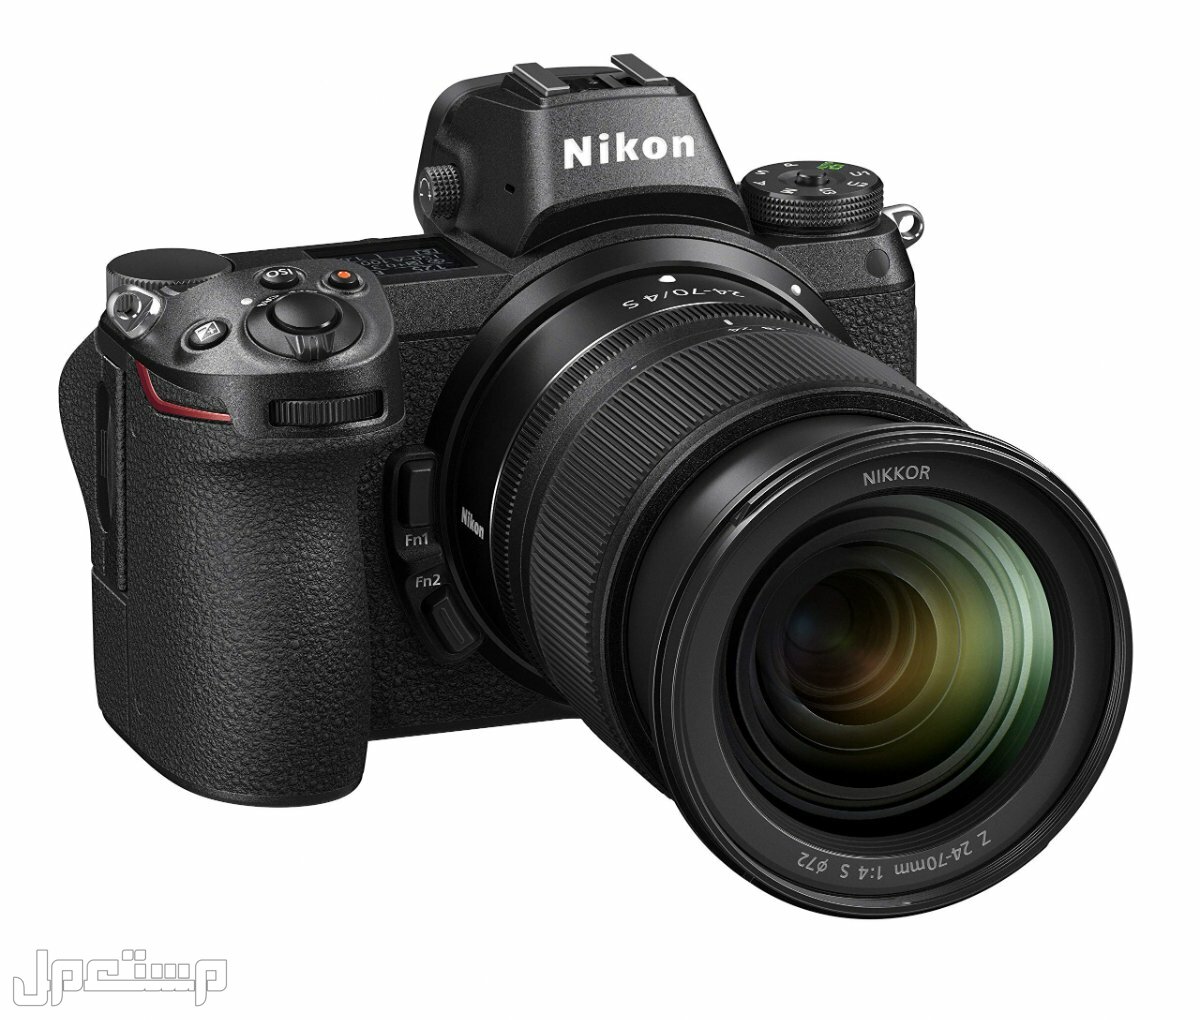 مواصفات ومميزات وأسعار أفضل أنواع كاميرات نيكون للمحترفين في تونس كاميرا Nikon Z6